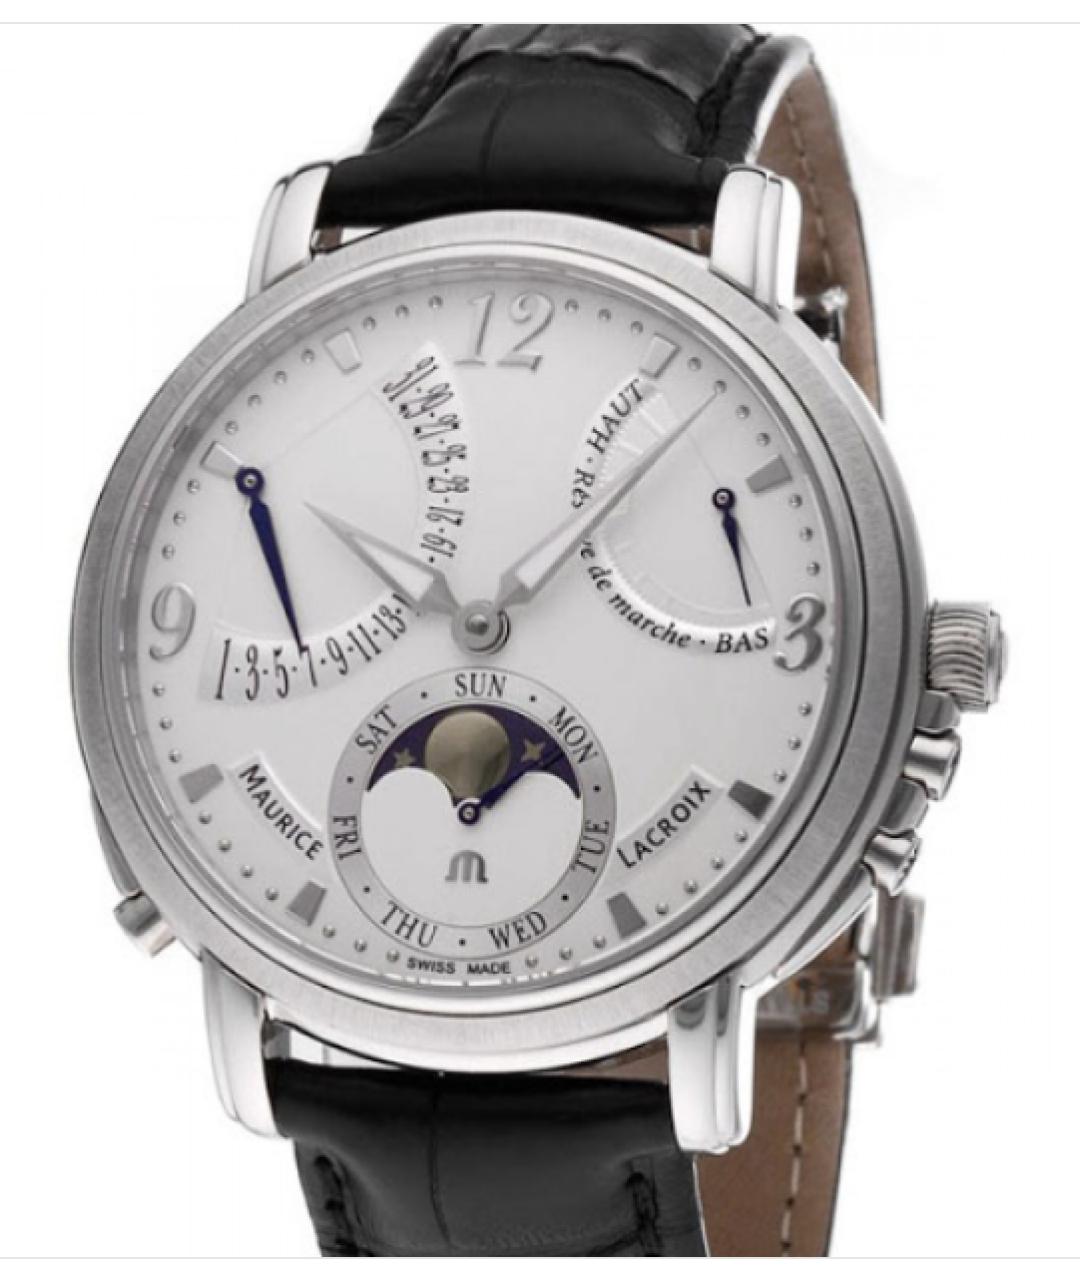 MAURICE LACROIX Серебряные стальные часы, фото 1